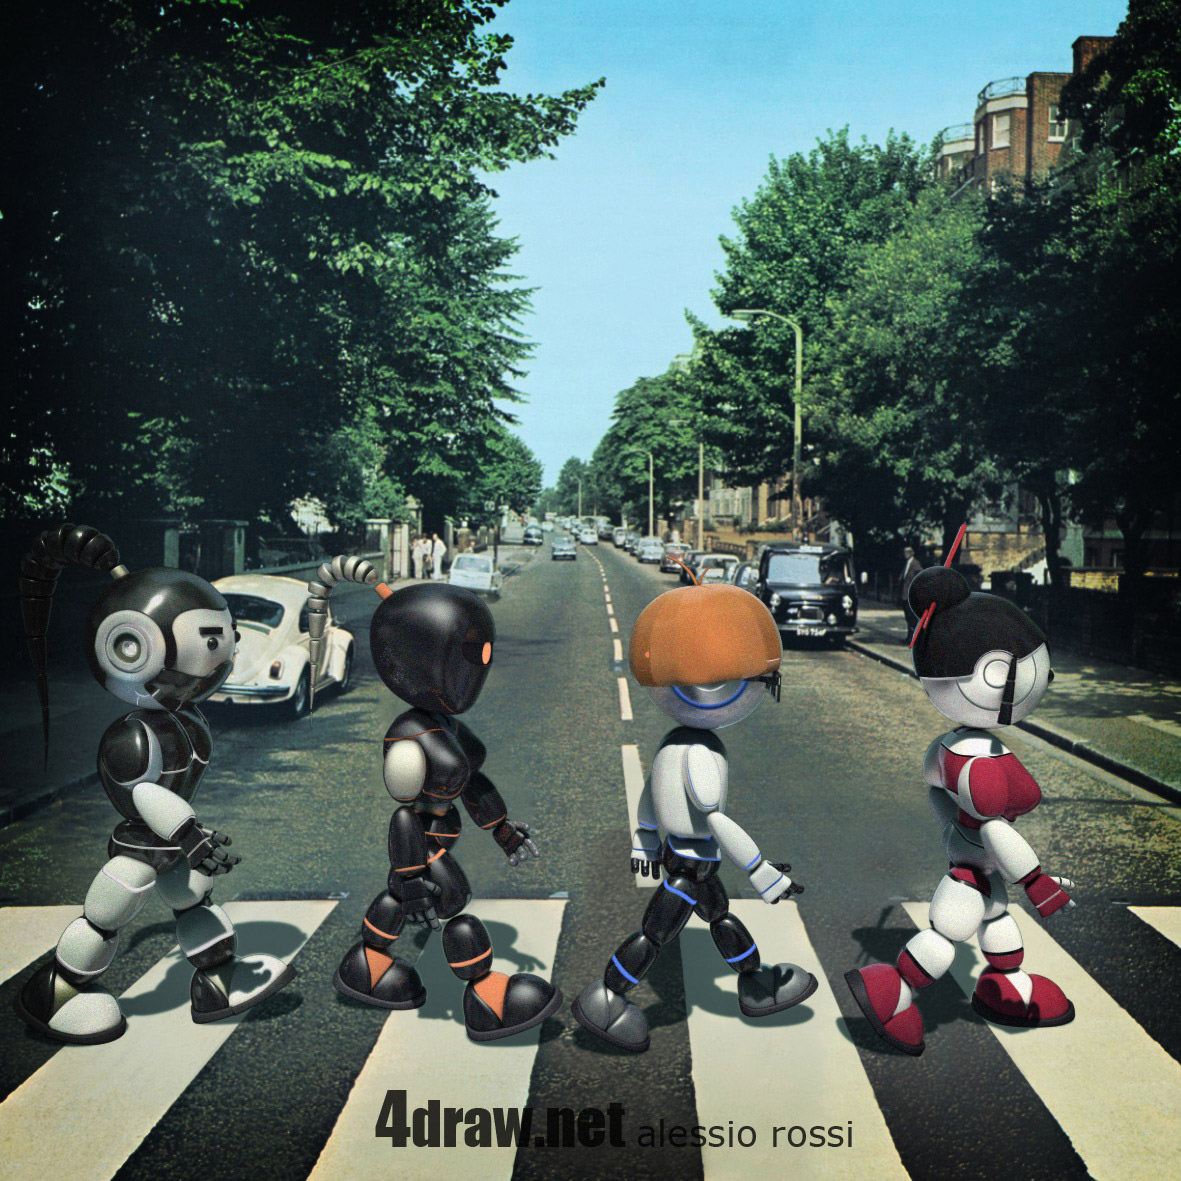 Abbey road-bot